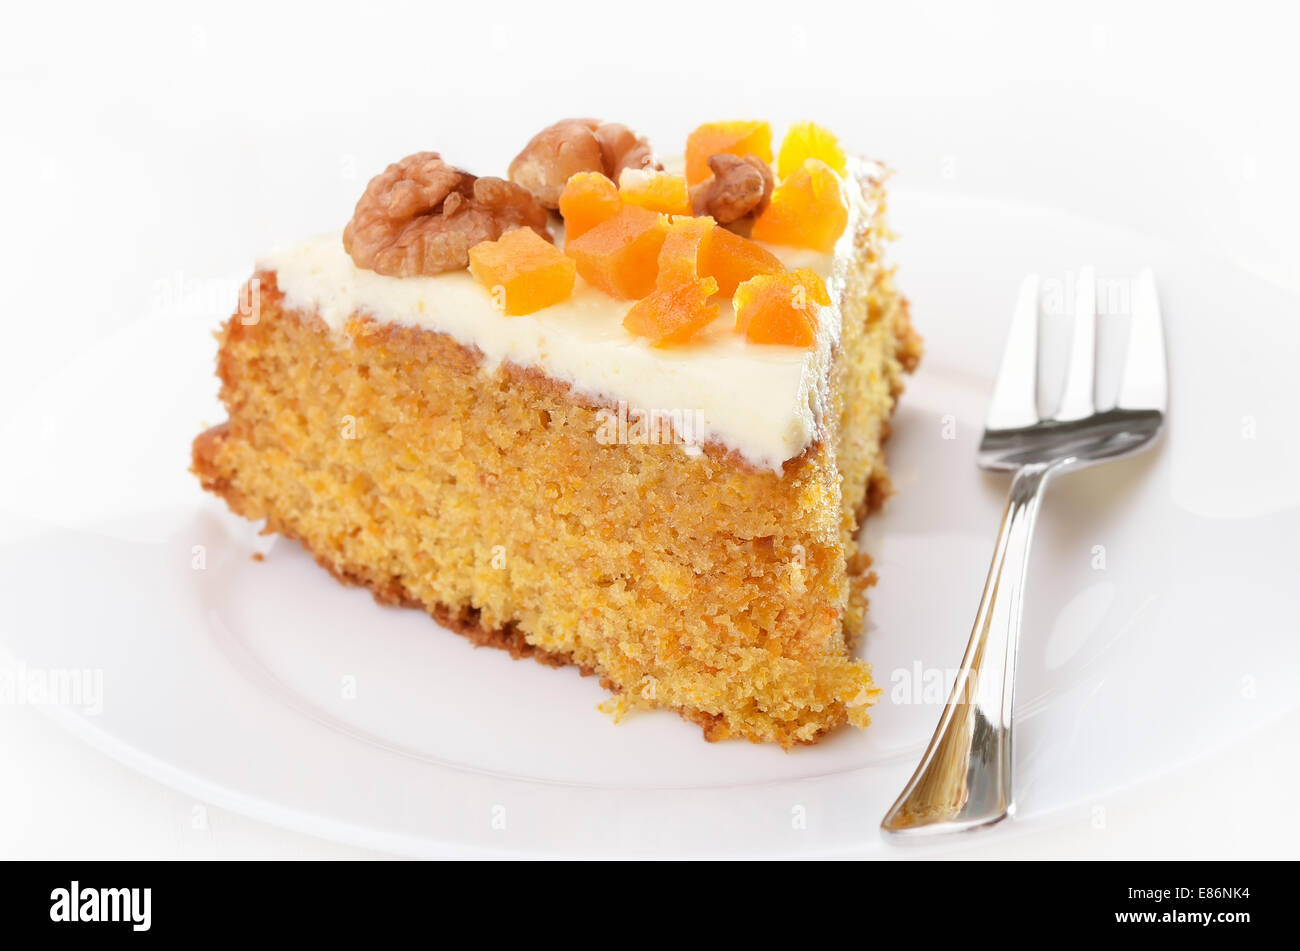 Karotte-Kuchen mit Zuckerguss verziert, getrockneten Aprikosen und Walnuss auf weißen Teller Stockfoto